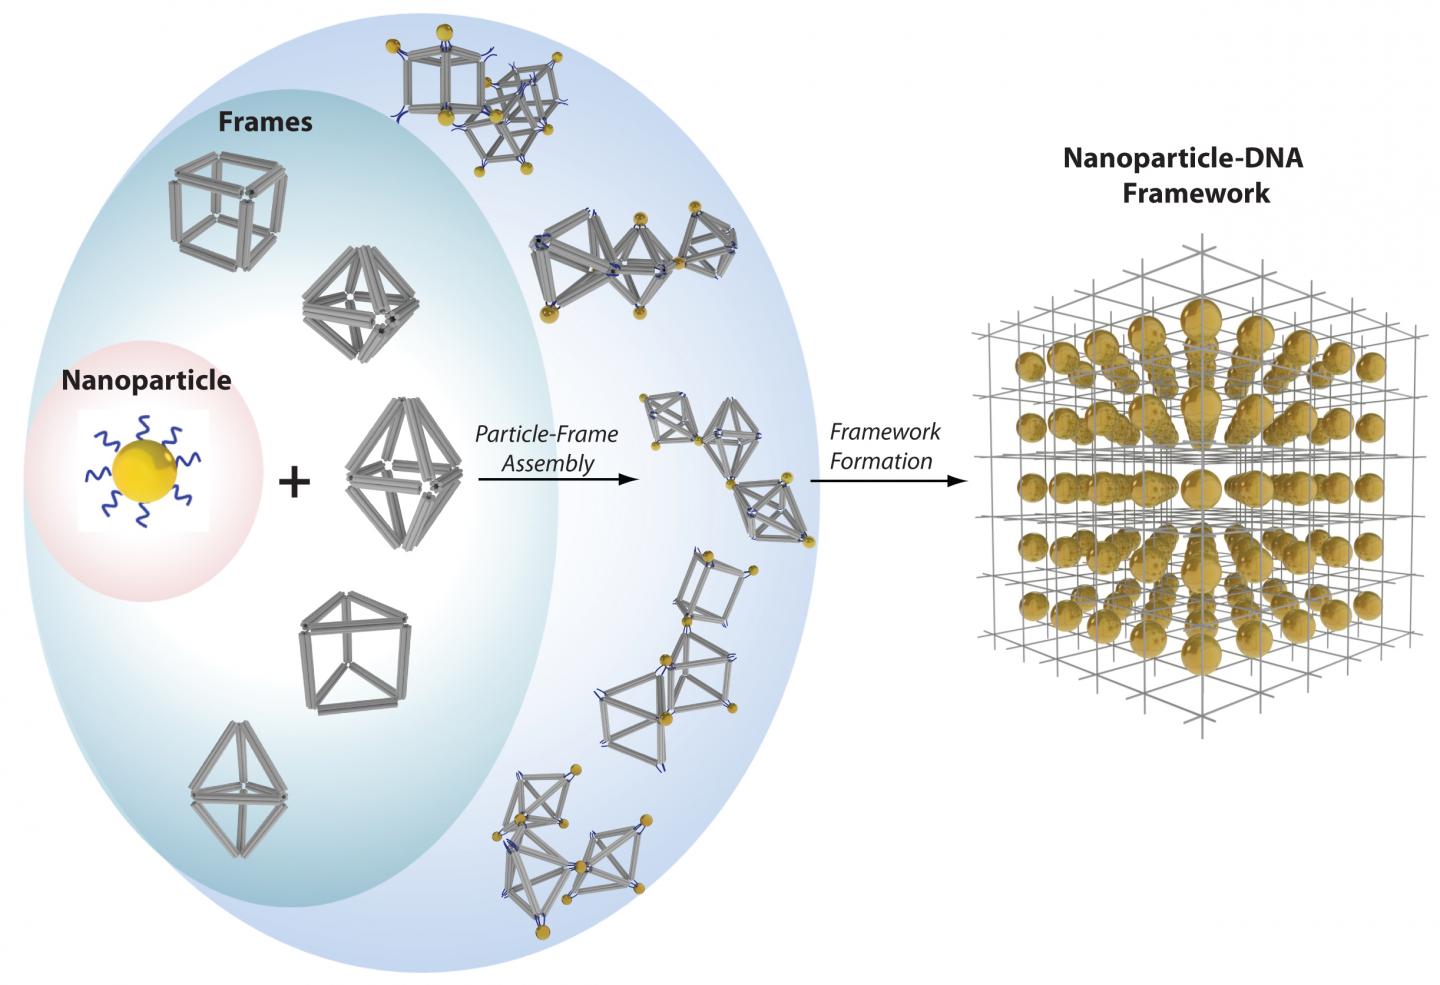 DNA-Nanoparticle Frameworks